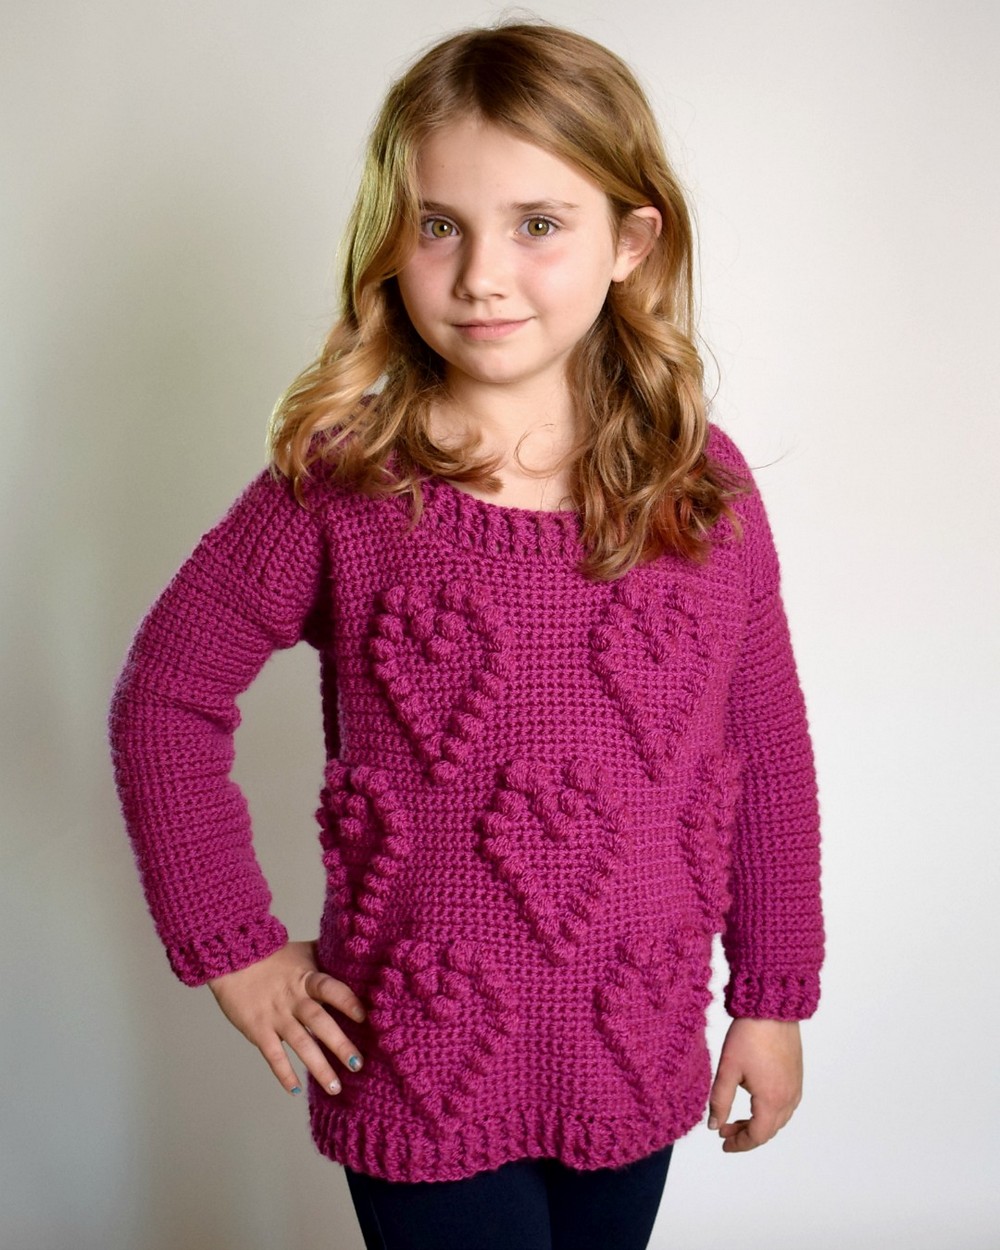 Free heart shaped crochet sweater pattern